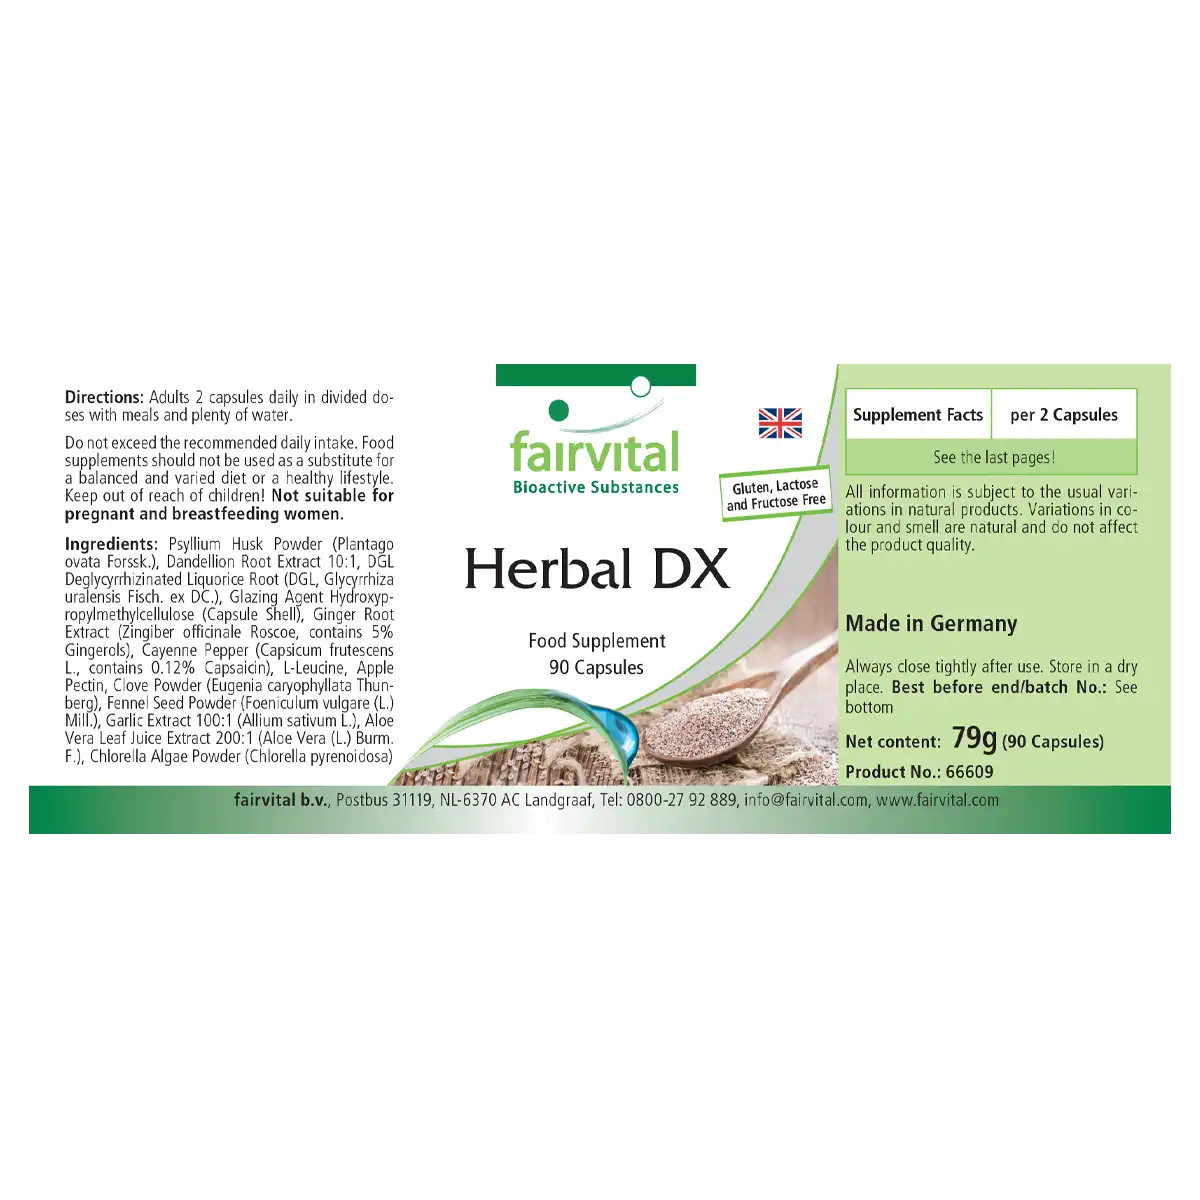 Herbal DX